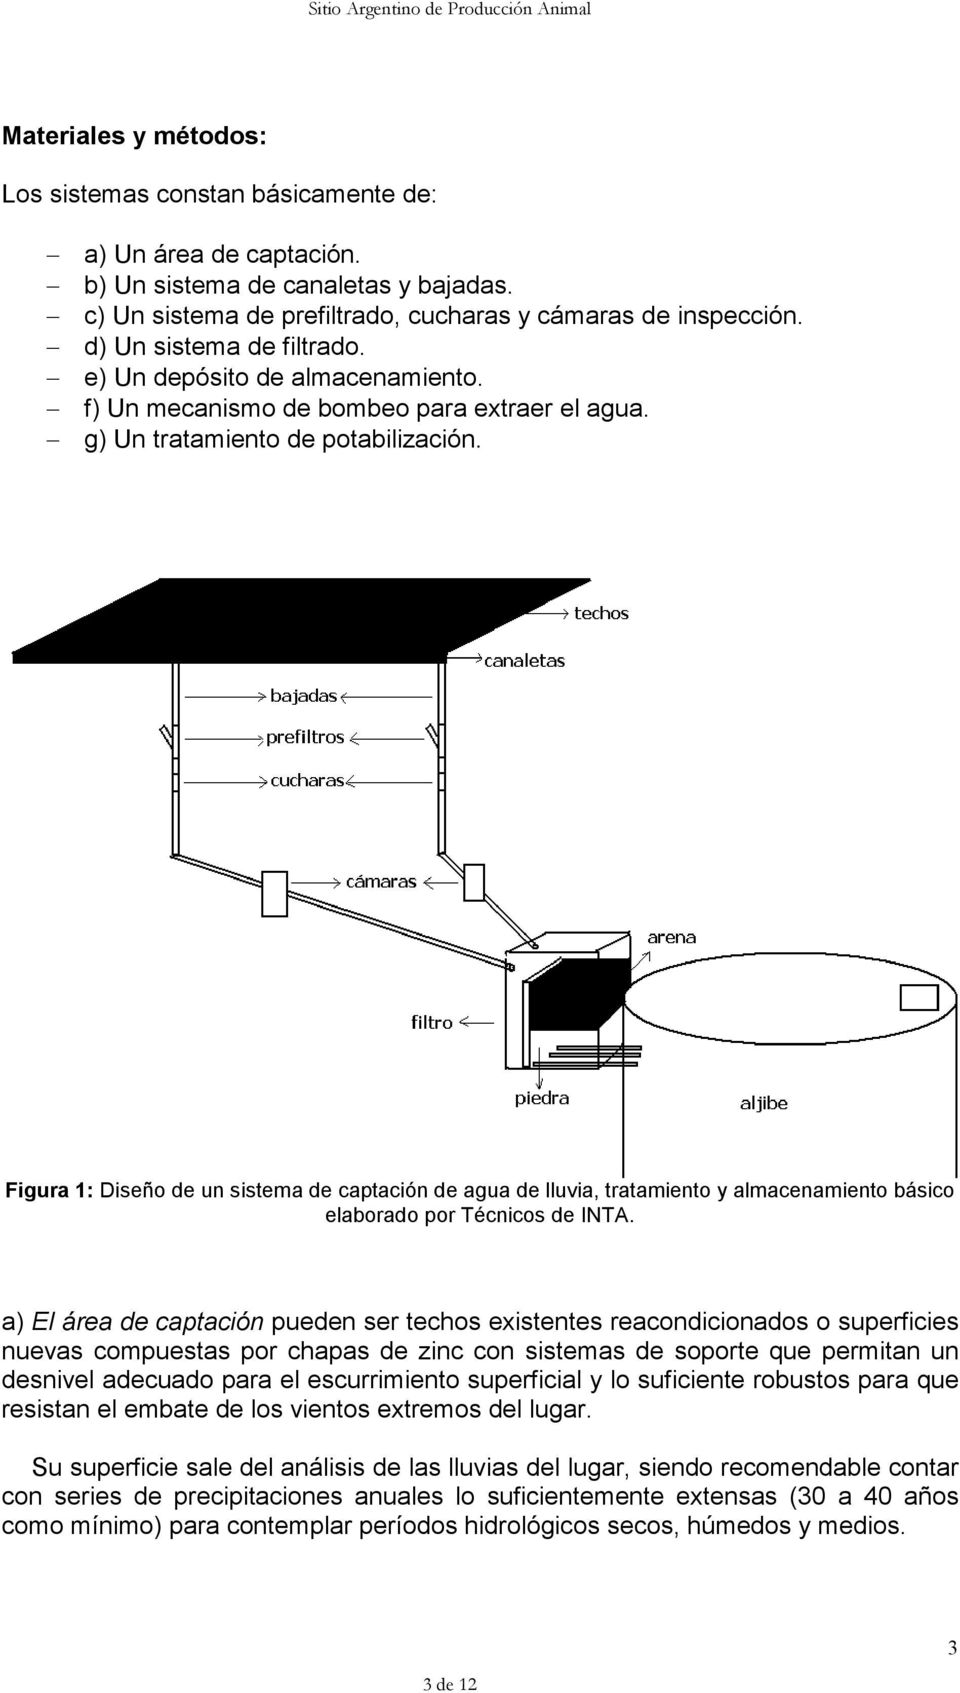 Figura 1: Diseño de un sistema de captación de agua de lluvia, tratamiento y almacenamiento básico elaborado por Técnicos de INTA.